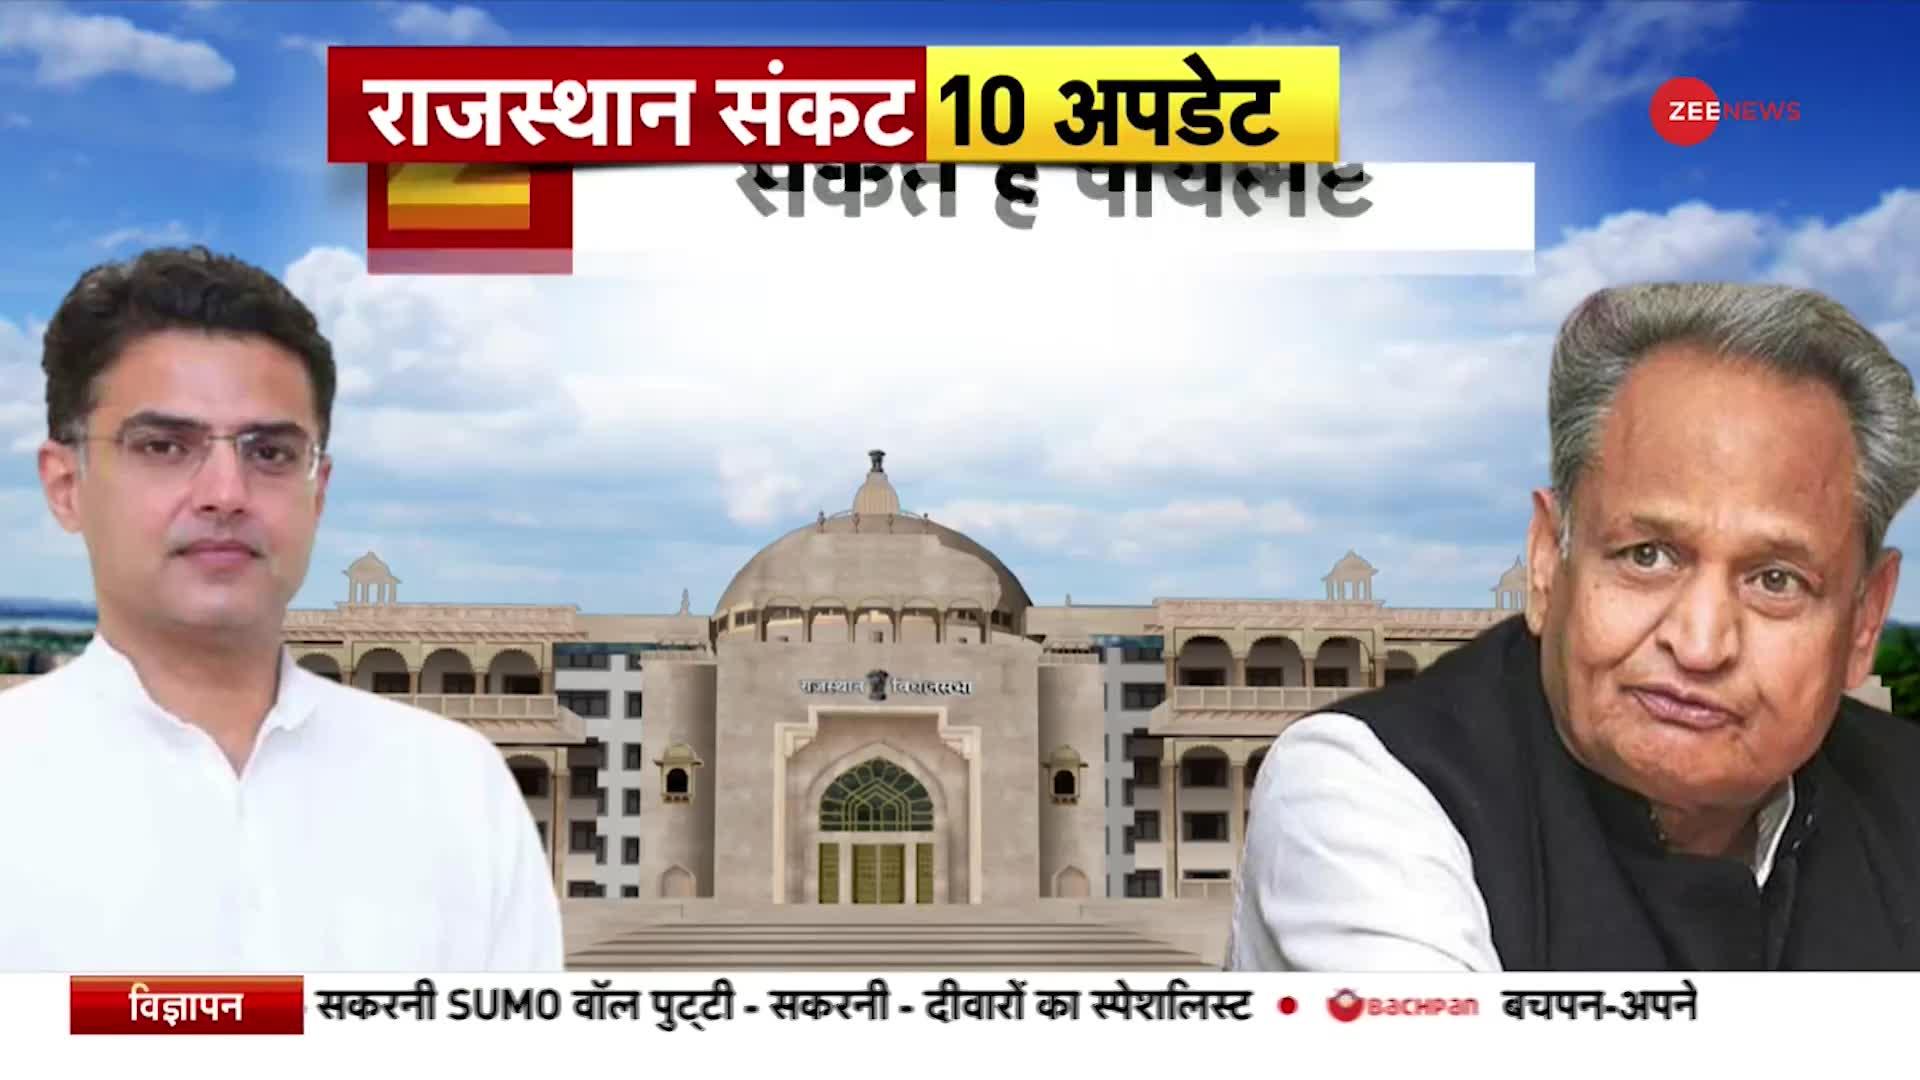 Rajasthan Congress News: राजस्थान के सियासी संकट से जुड़े 10 बड़े अपडेट